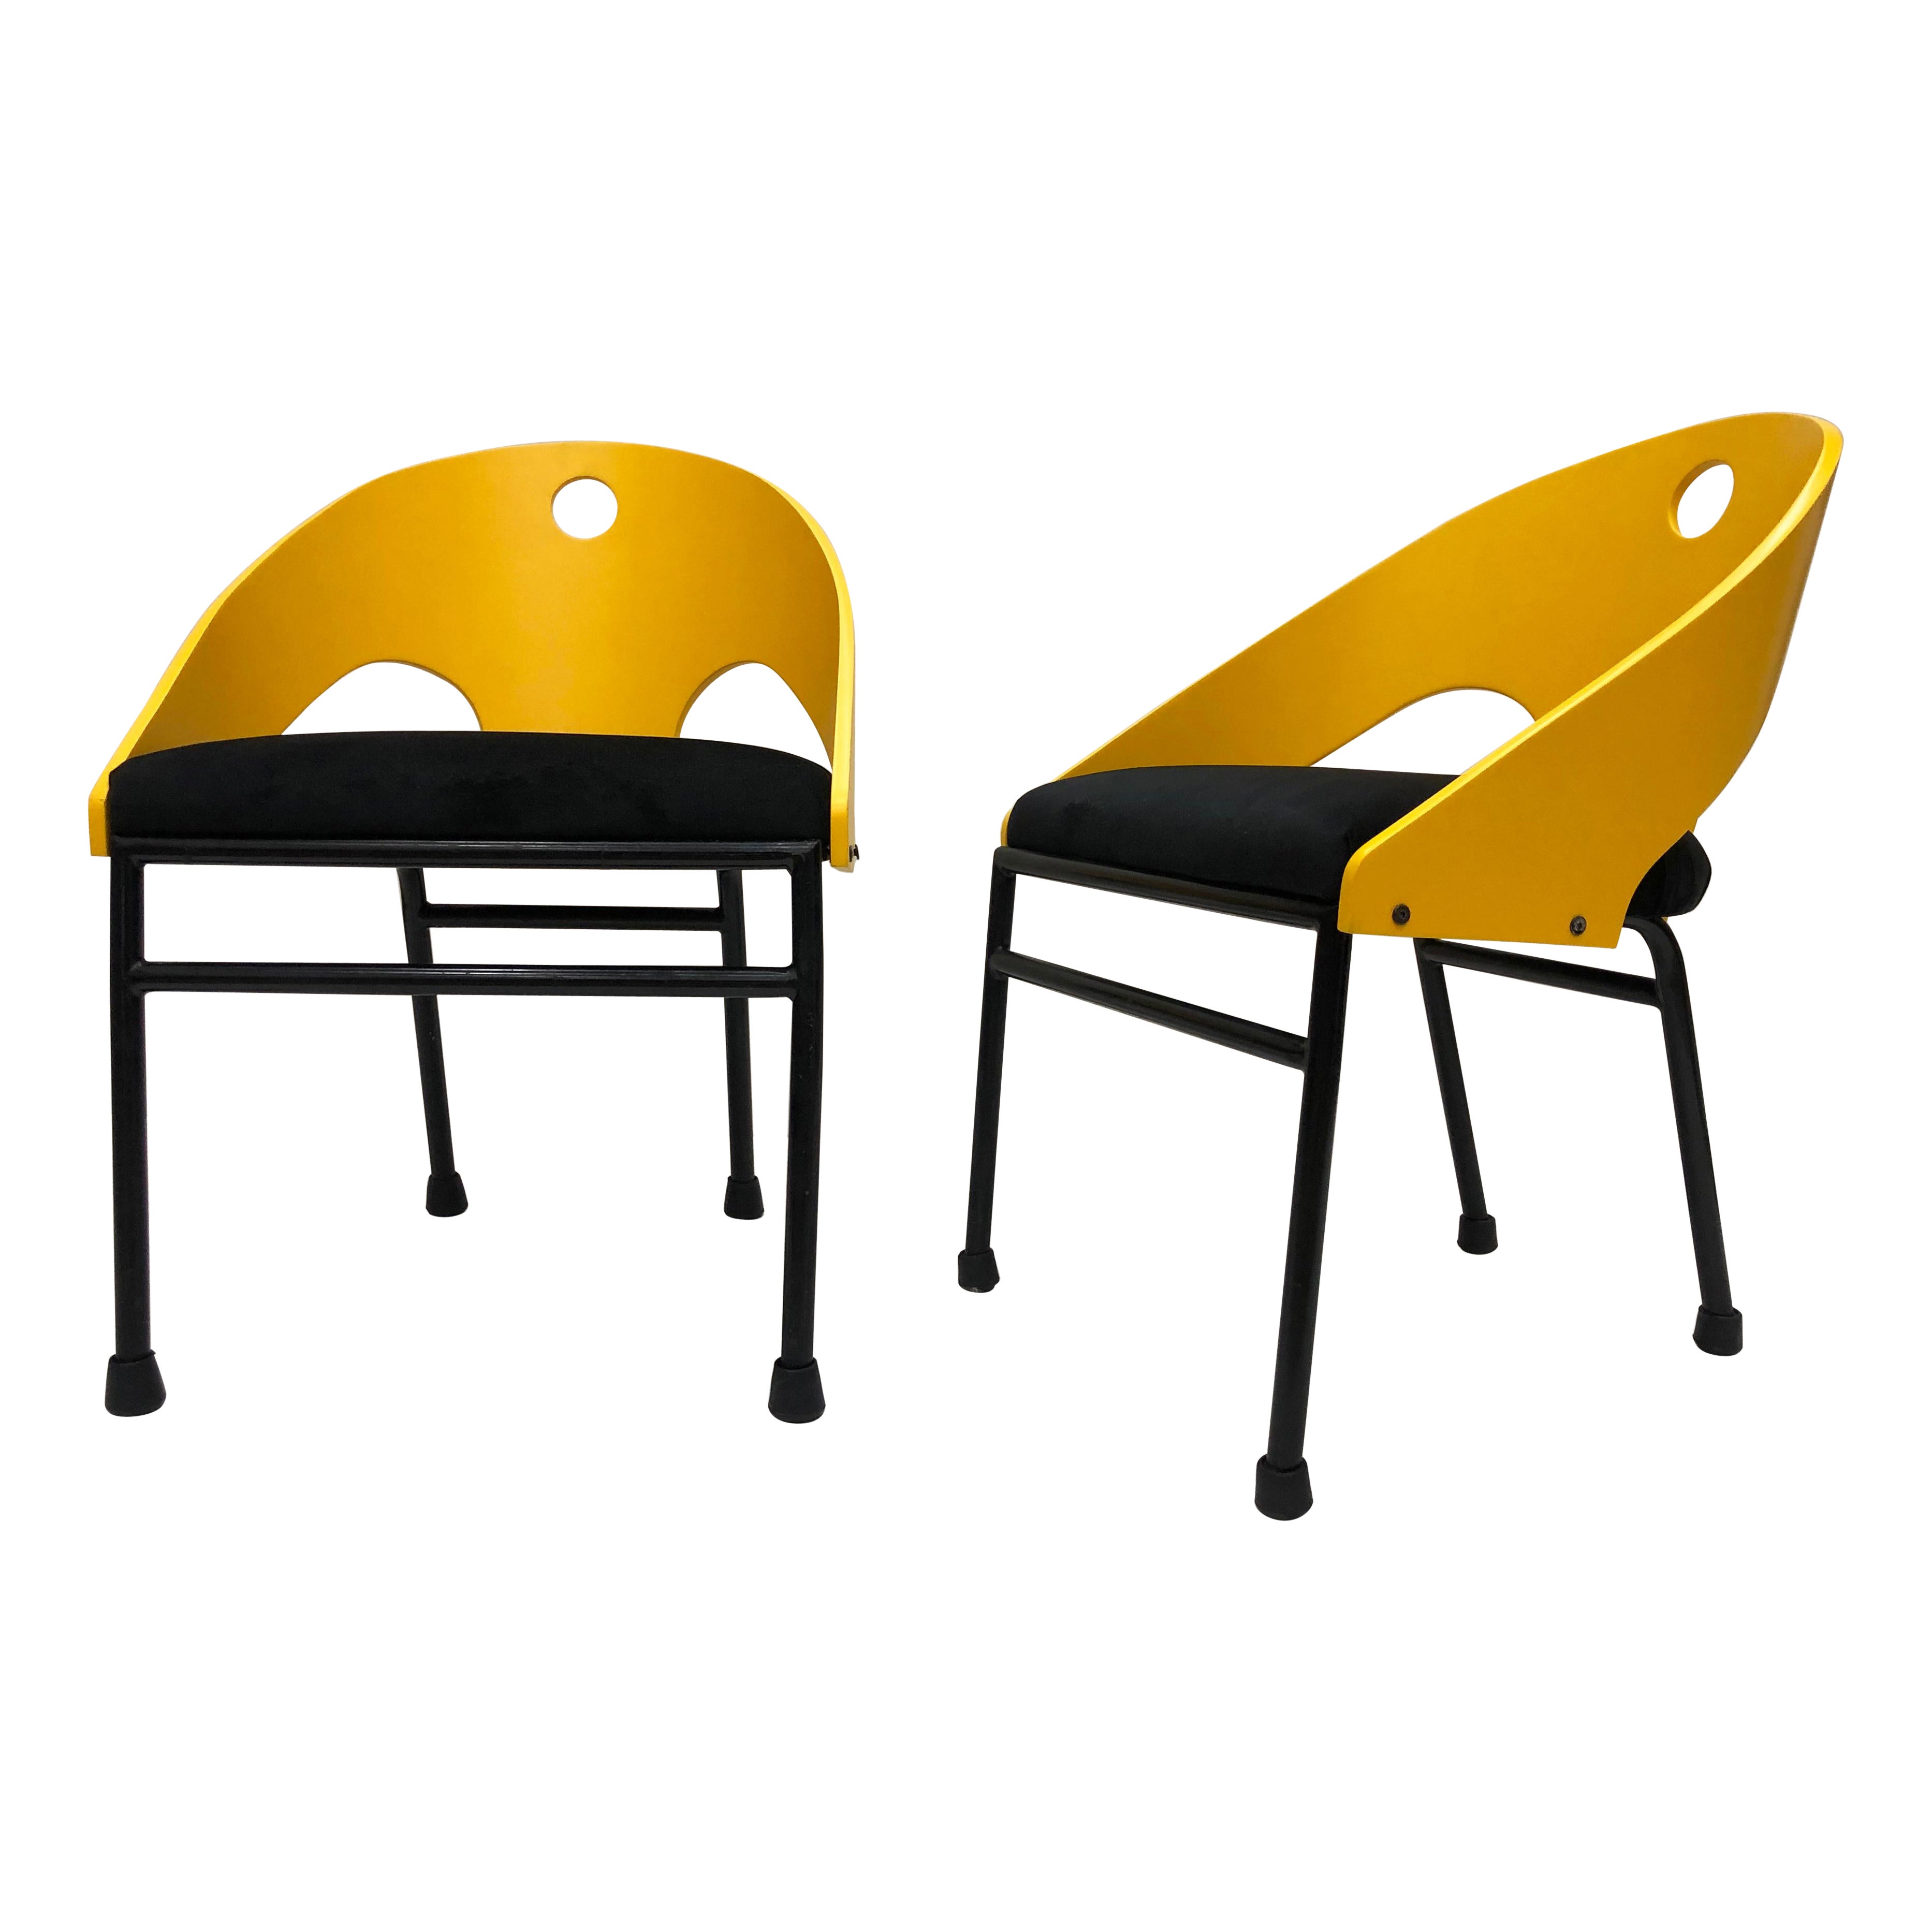 Postmoderne Stühle im Memphis-Stil der 1980er Jahre, 3 Paare verfügbar